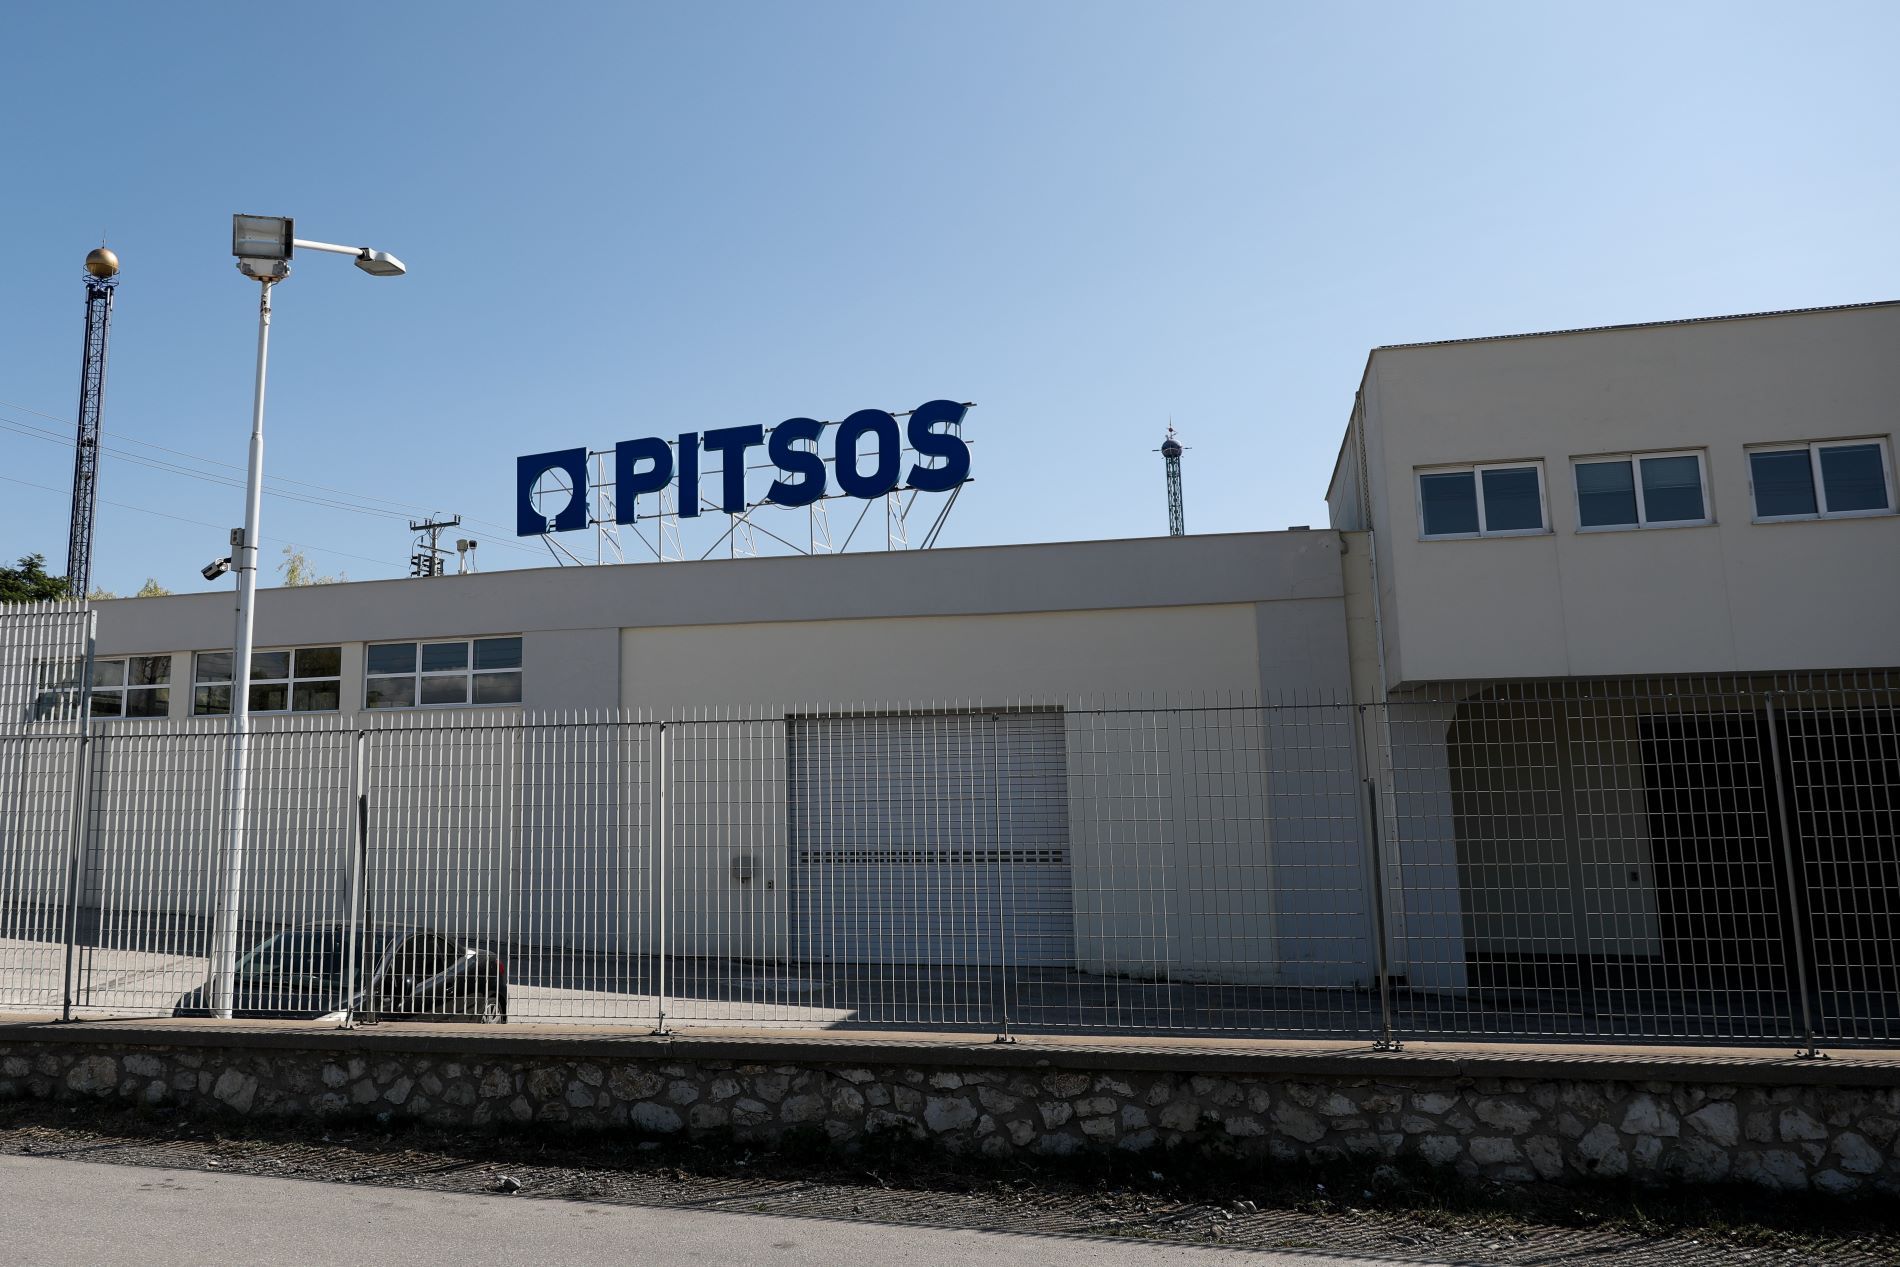 Το εργοστάσιο της Πίτσος (Pitsos) στην περιοχή του Ρέντη © Eurokinissi